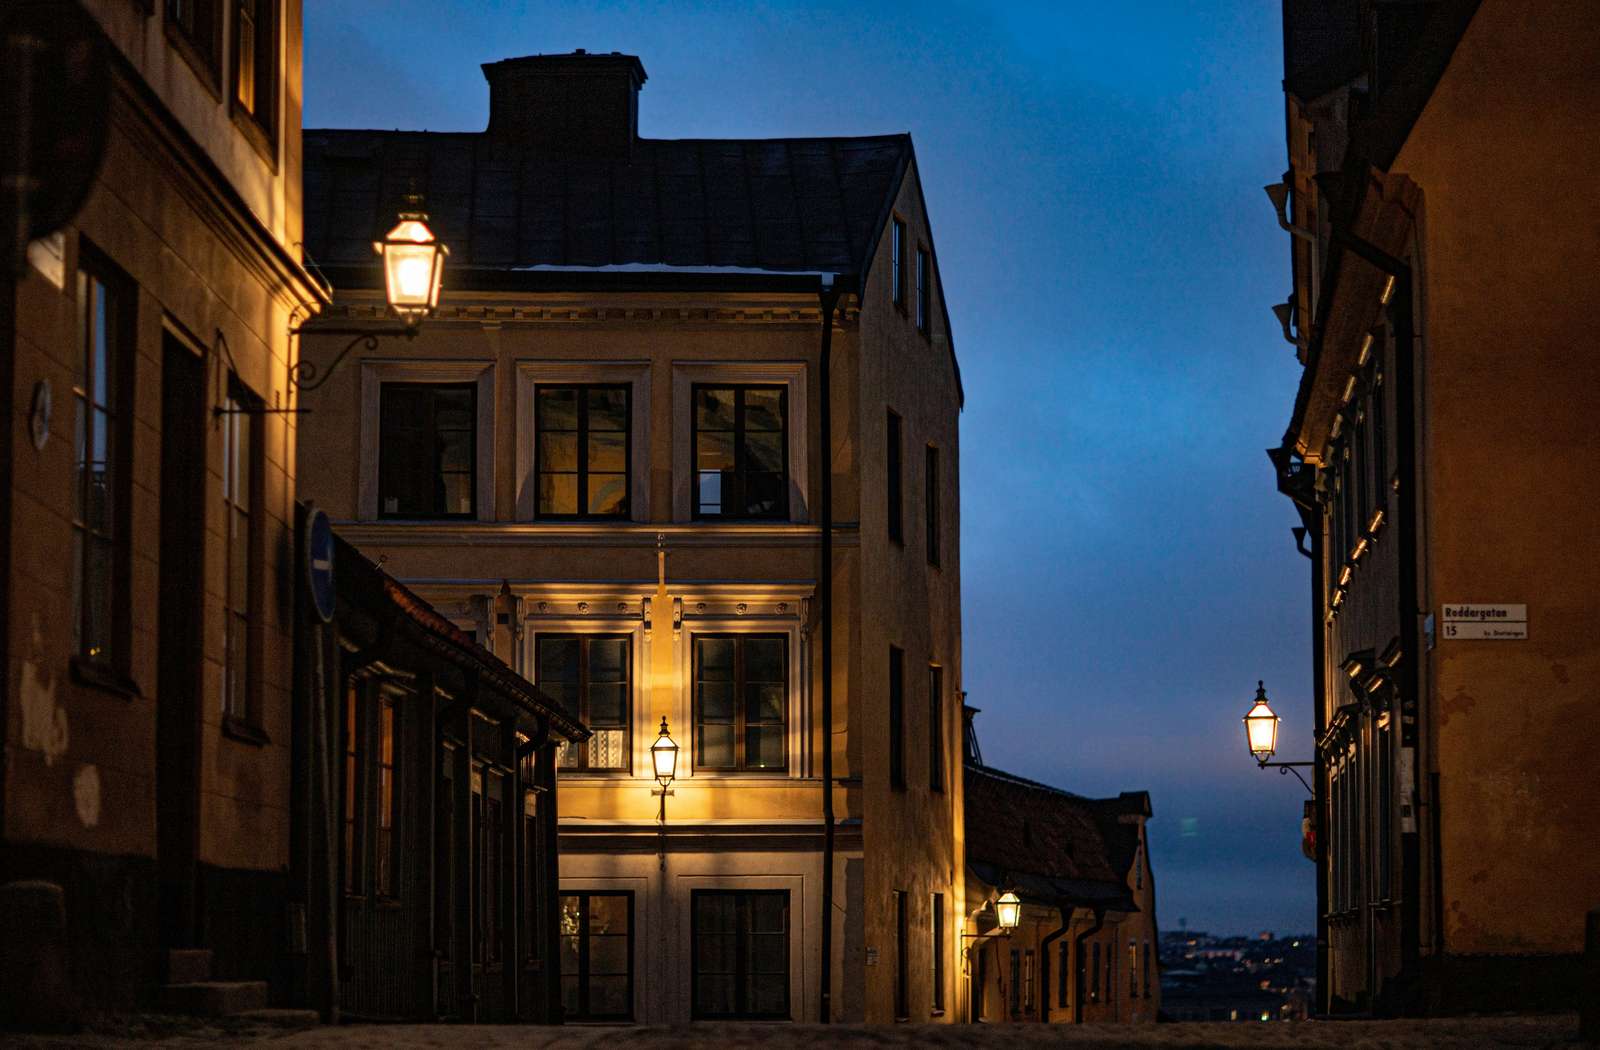 Στοκχόλμη, Σουηδία, νυχτερινή θέα παζλ online